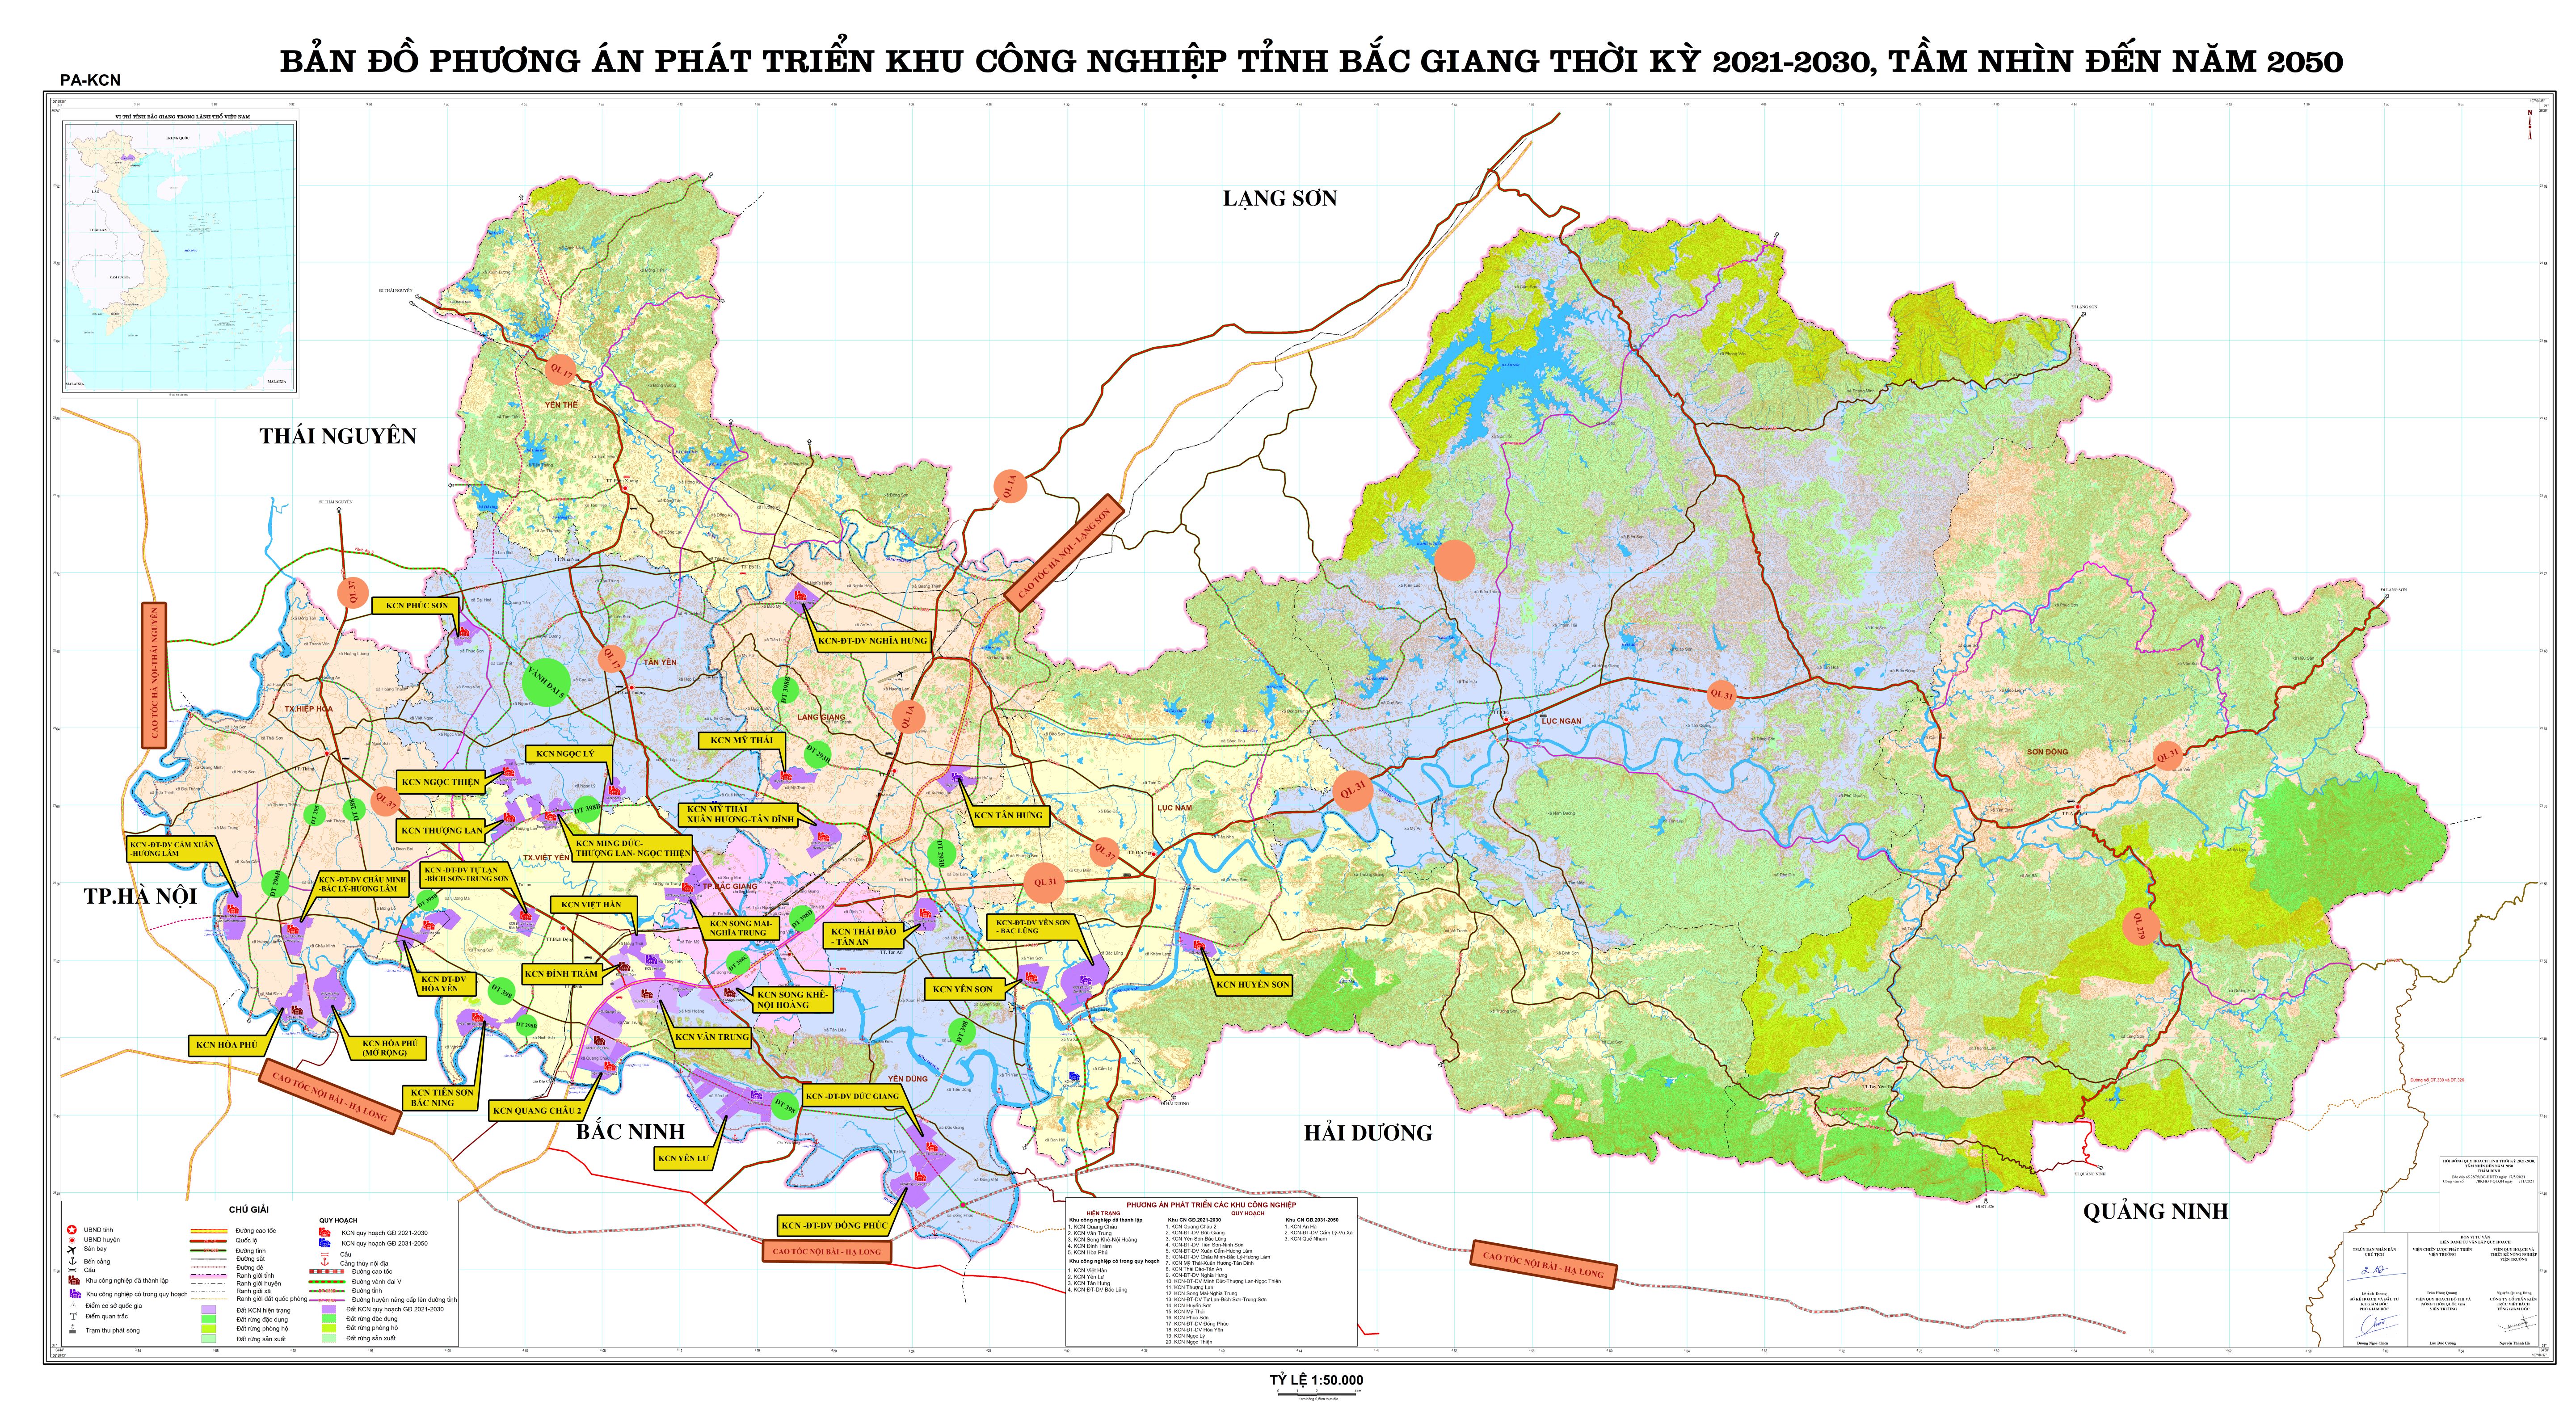 Khám phá bản đồ các KCN miền Bắc được cập nhật đến năm 2024 và tìm hiểu về những khu công nghiệp đang phát triển mạnh mẽ. Xem ngay để có cái nhìn tổng quan về nền công nghiệp Việt Nam!